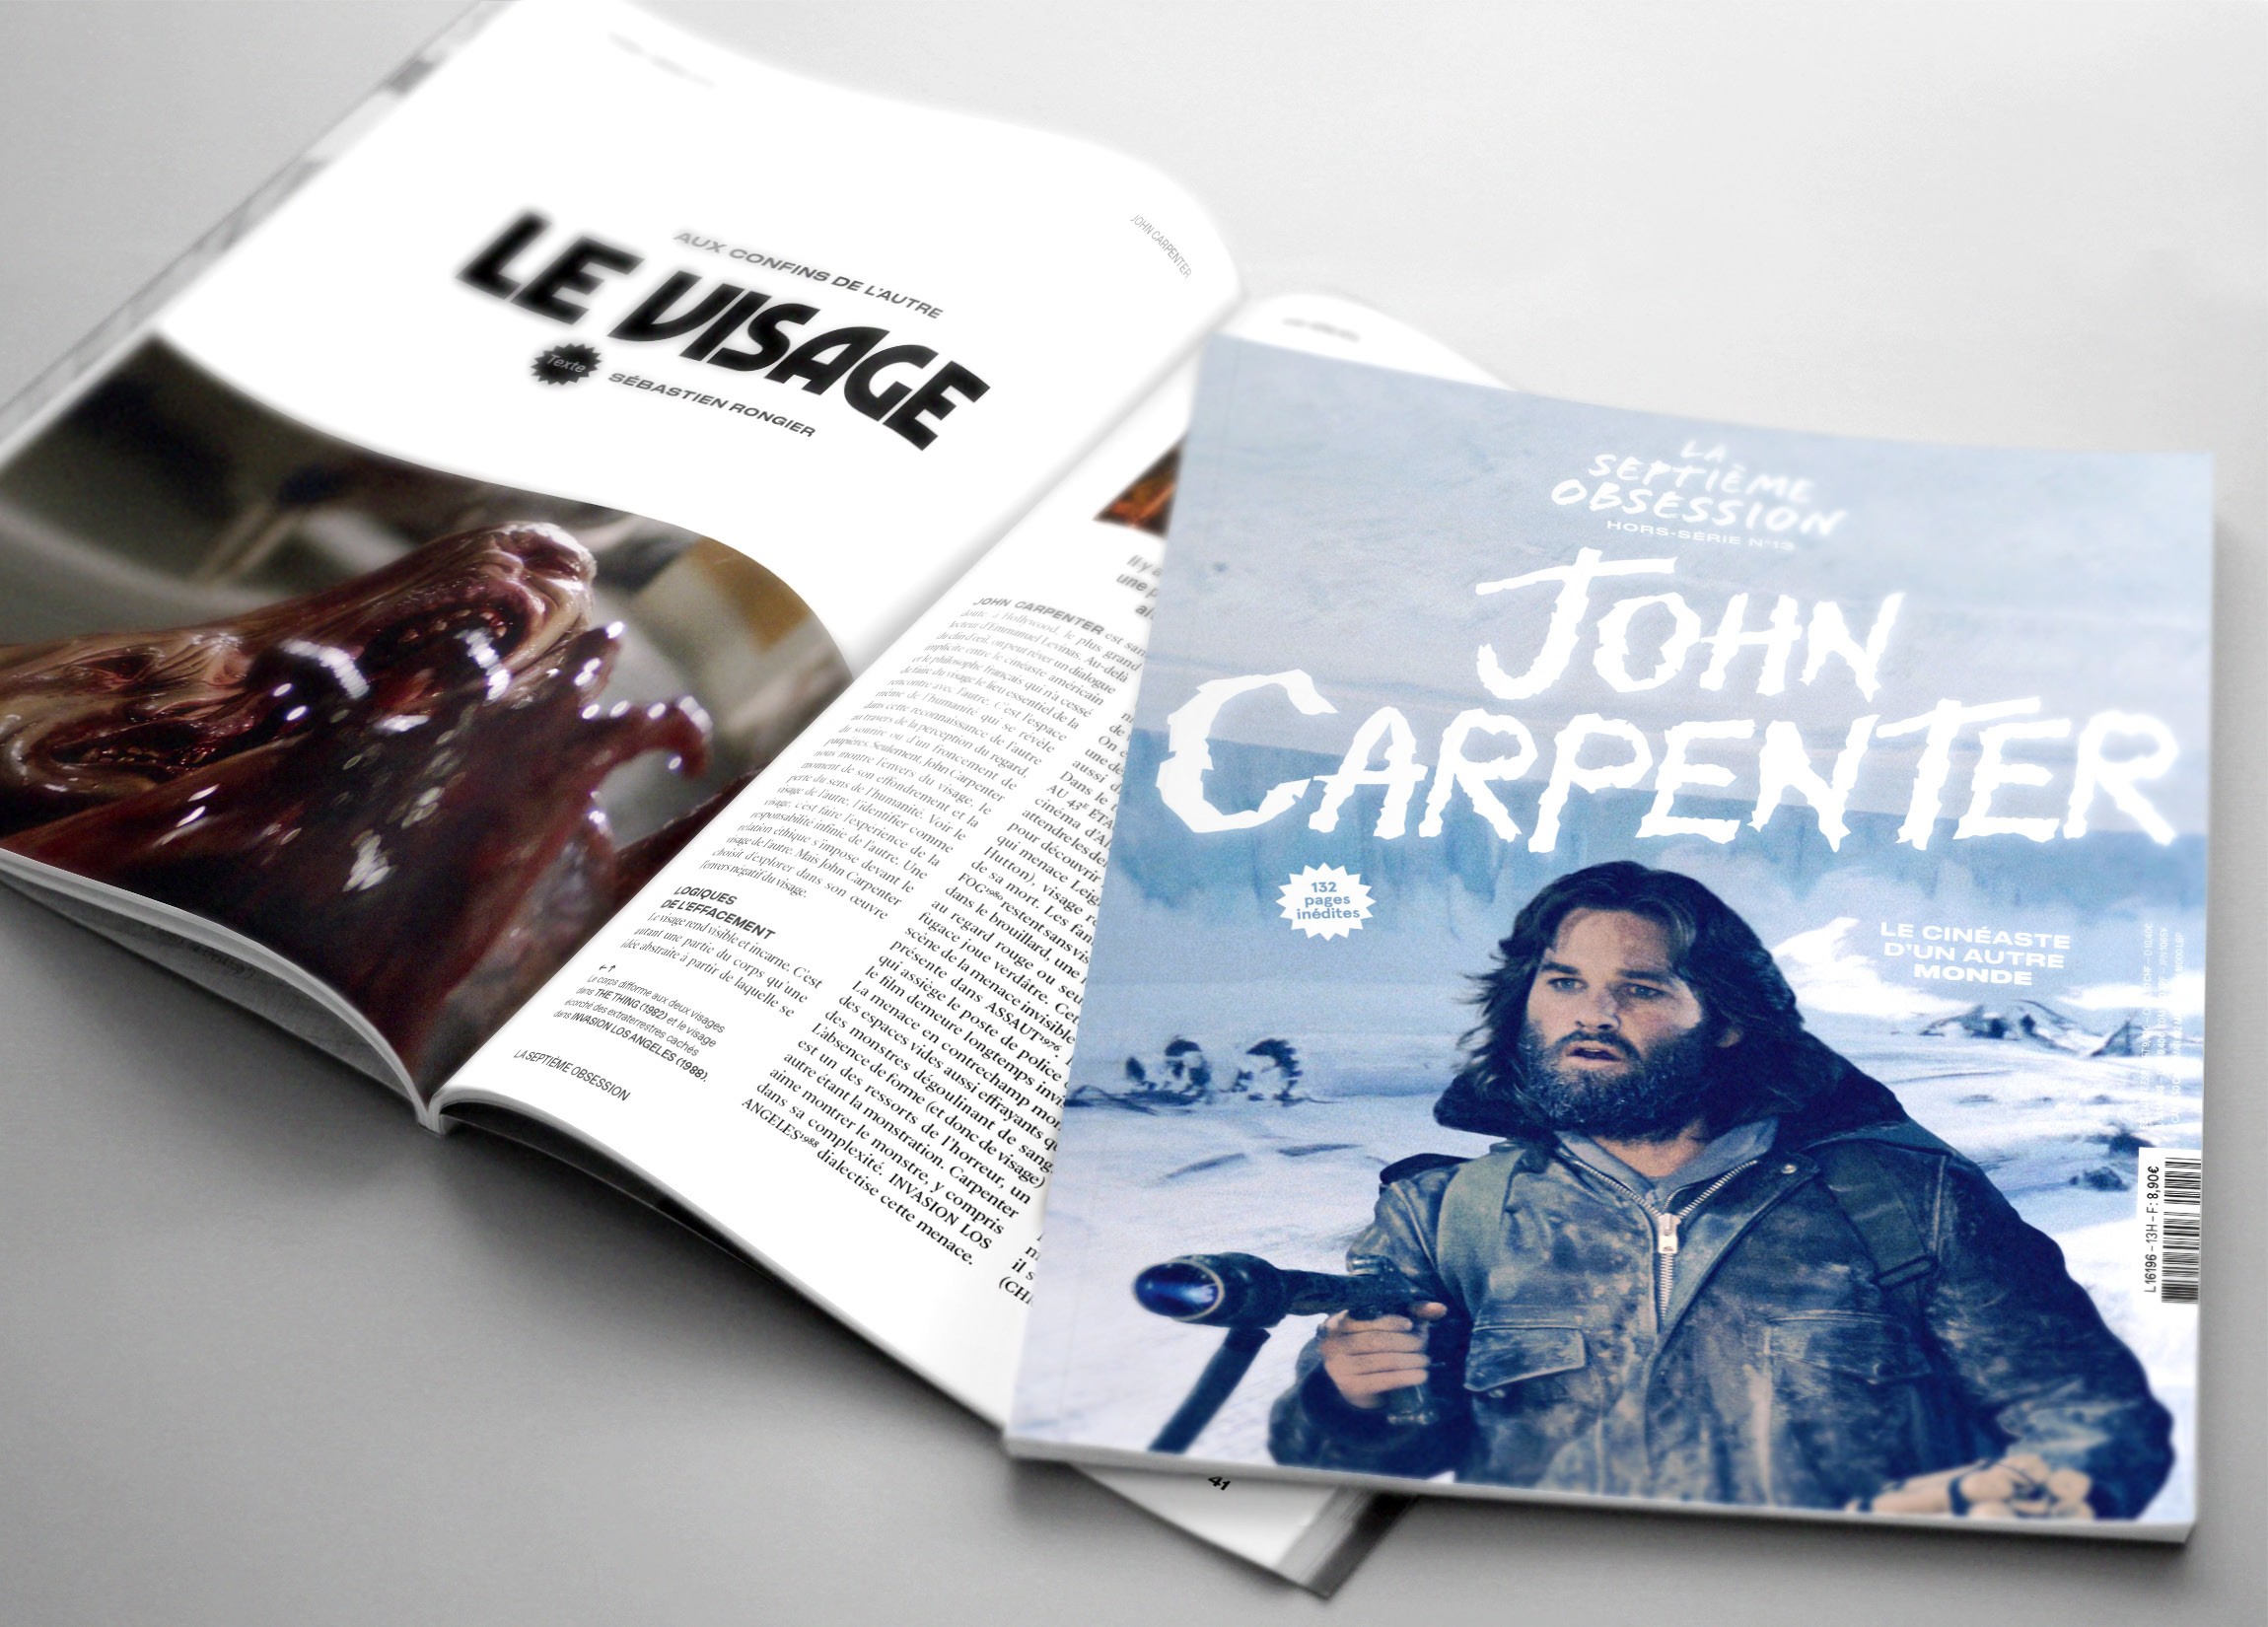 La Septieme Obsession #special issue 13 - John Carpenter